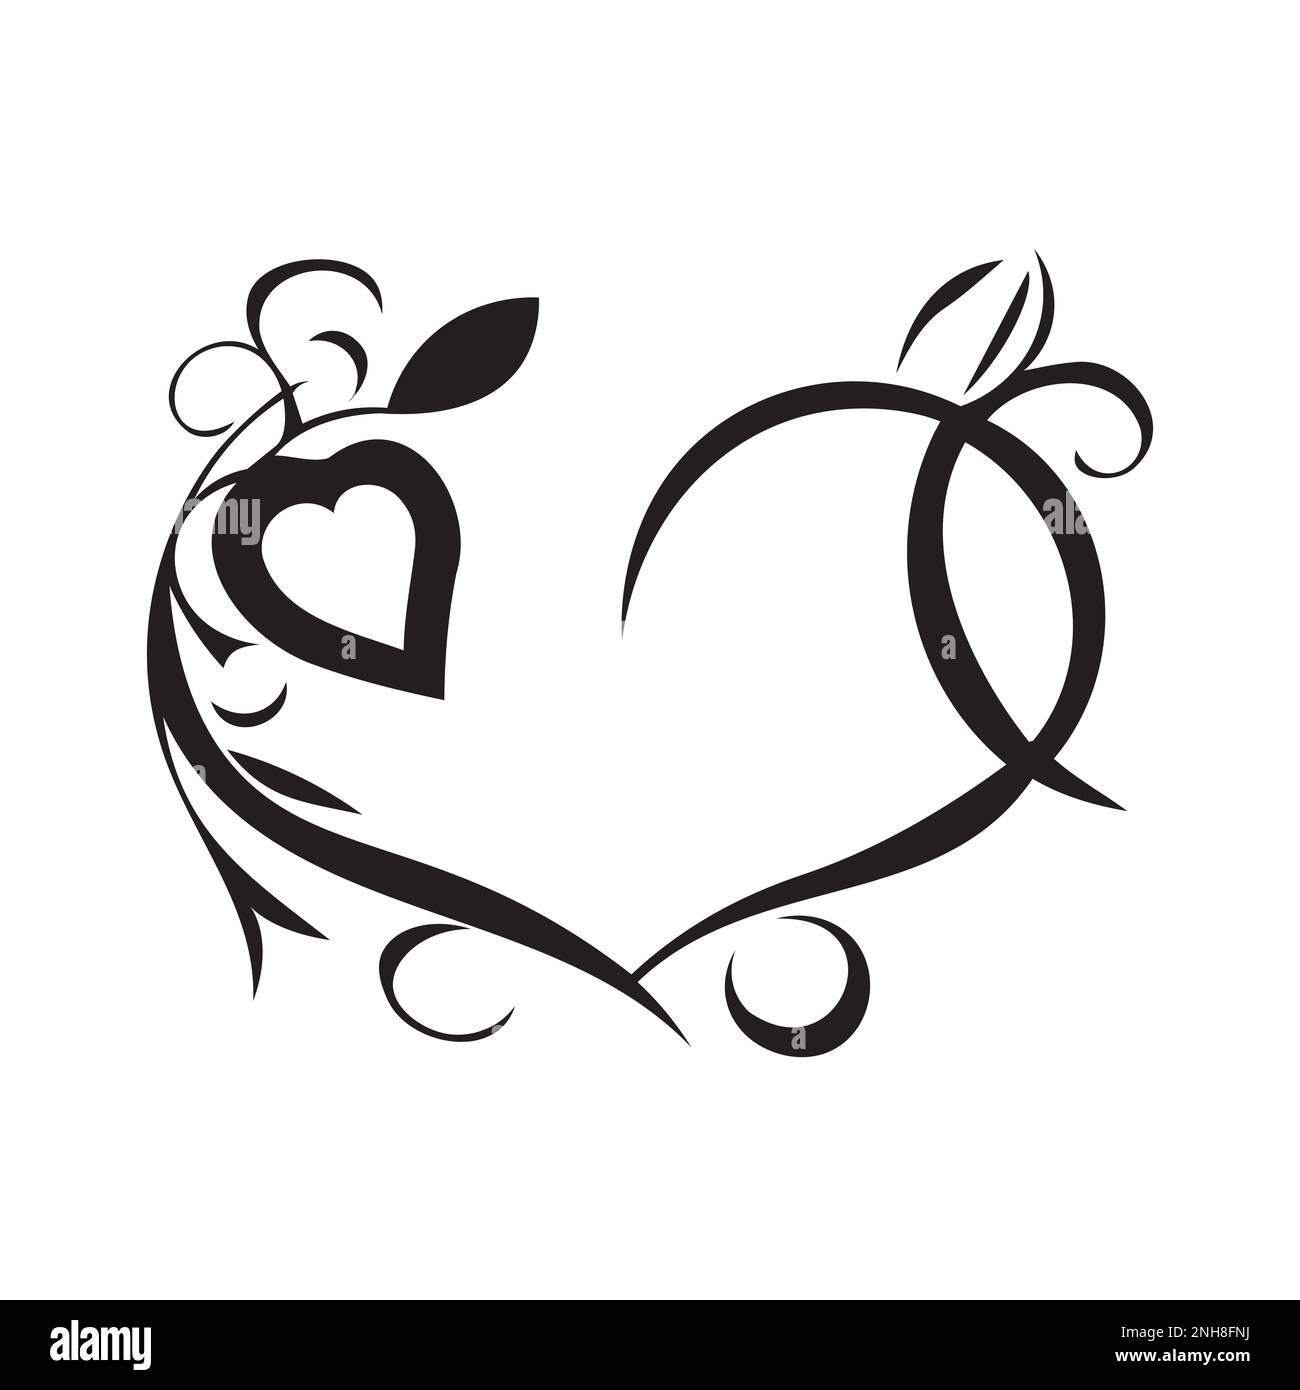 Decorazione cuore design con corona floreale. Linea arte cuore disegnato a mano. Motivo ornamentale Vector e illustrazione. Illustrazione Vettoriale